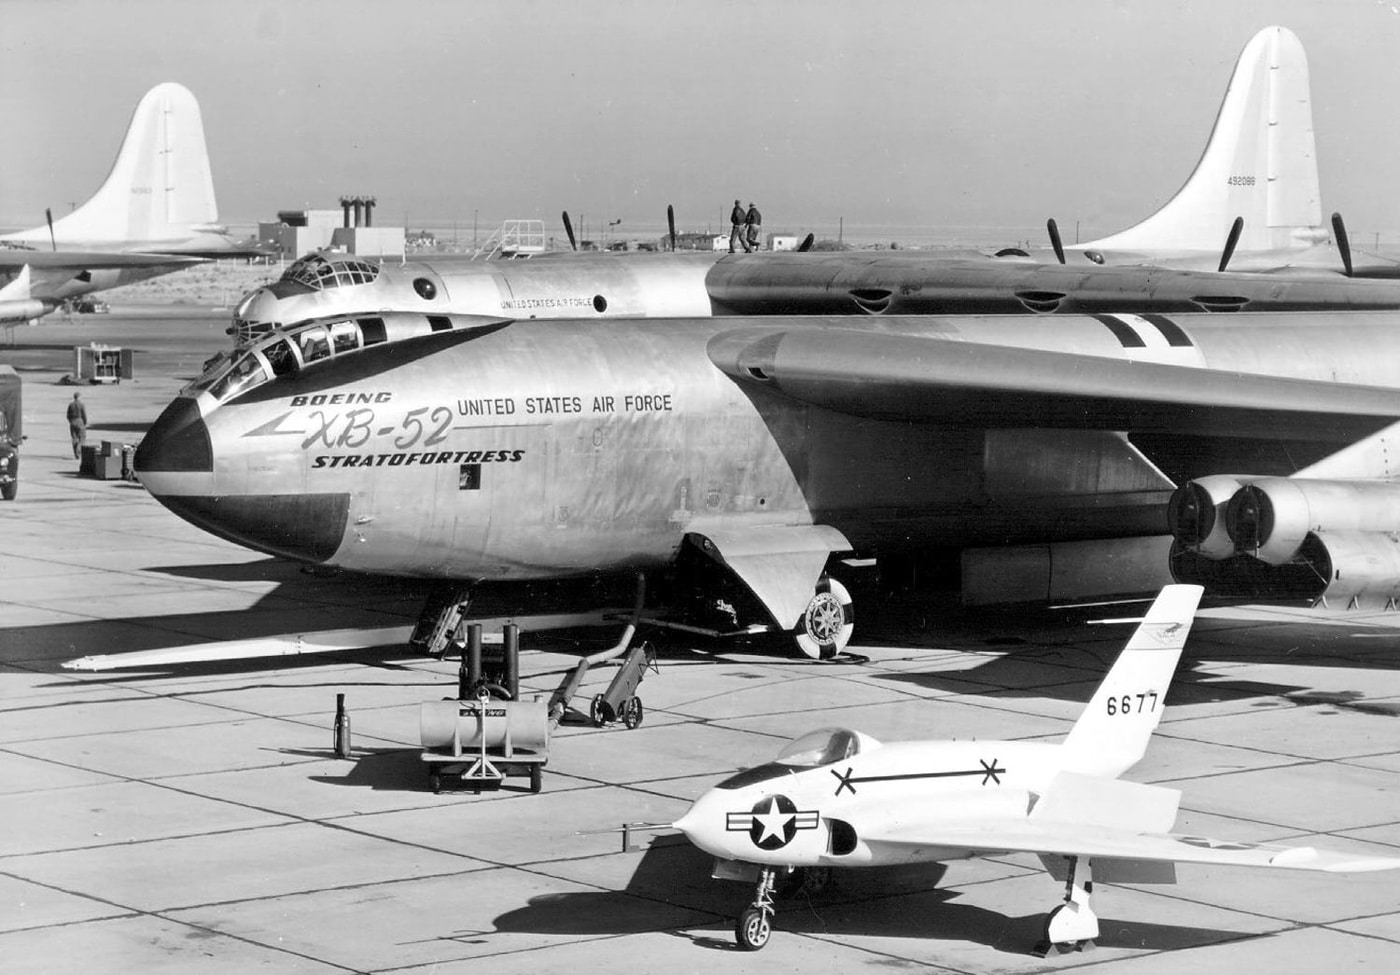 xb-52 prototype bomber